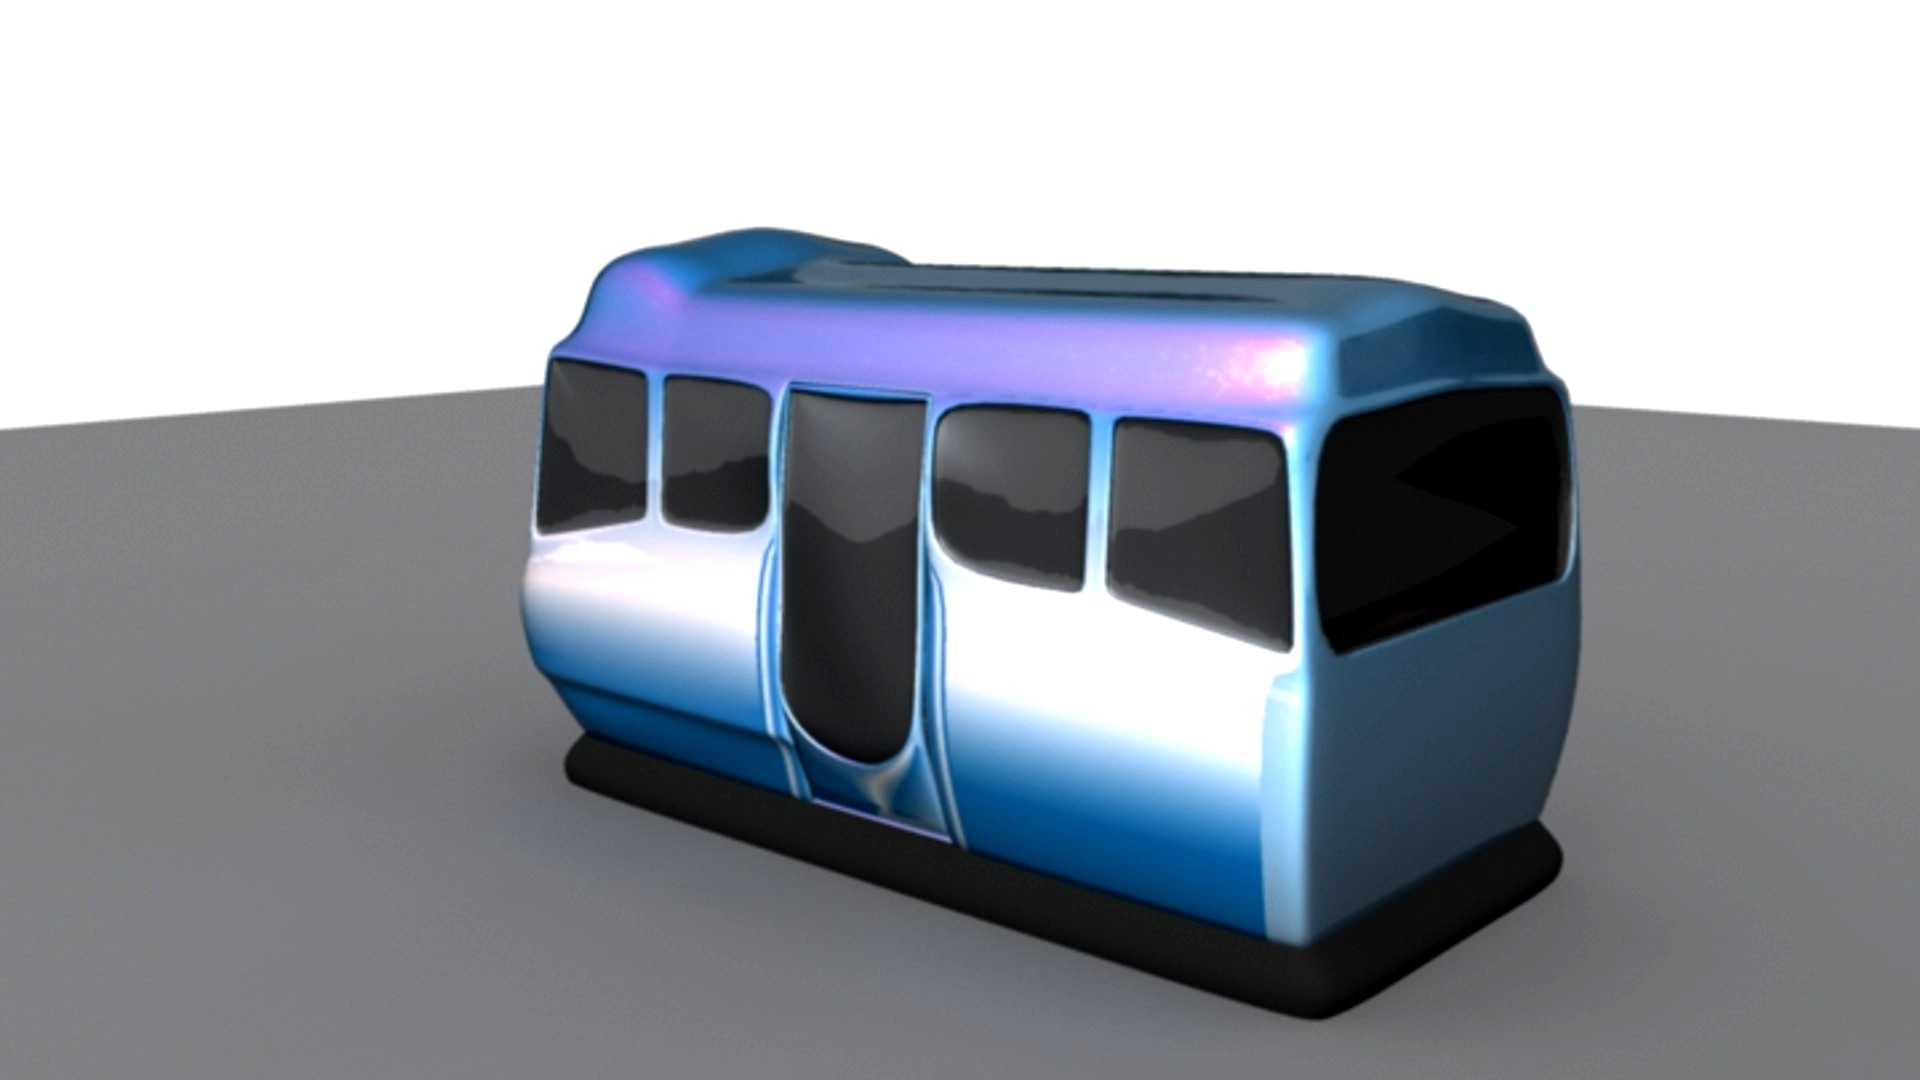 Futuristic bus